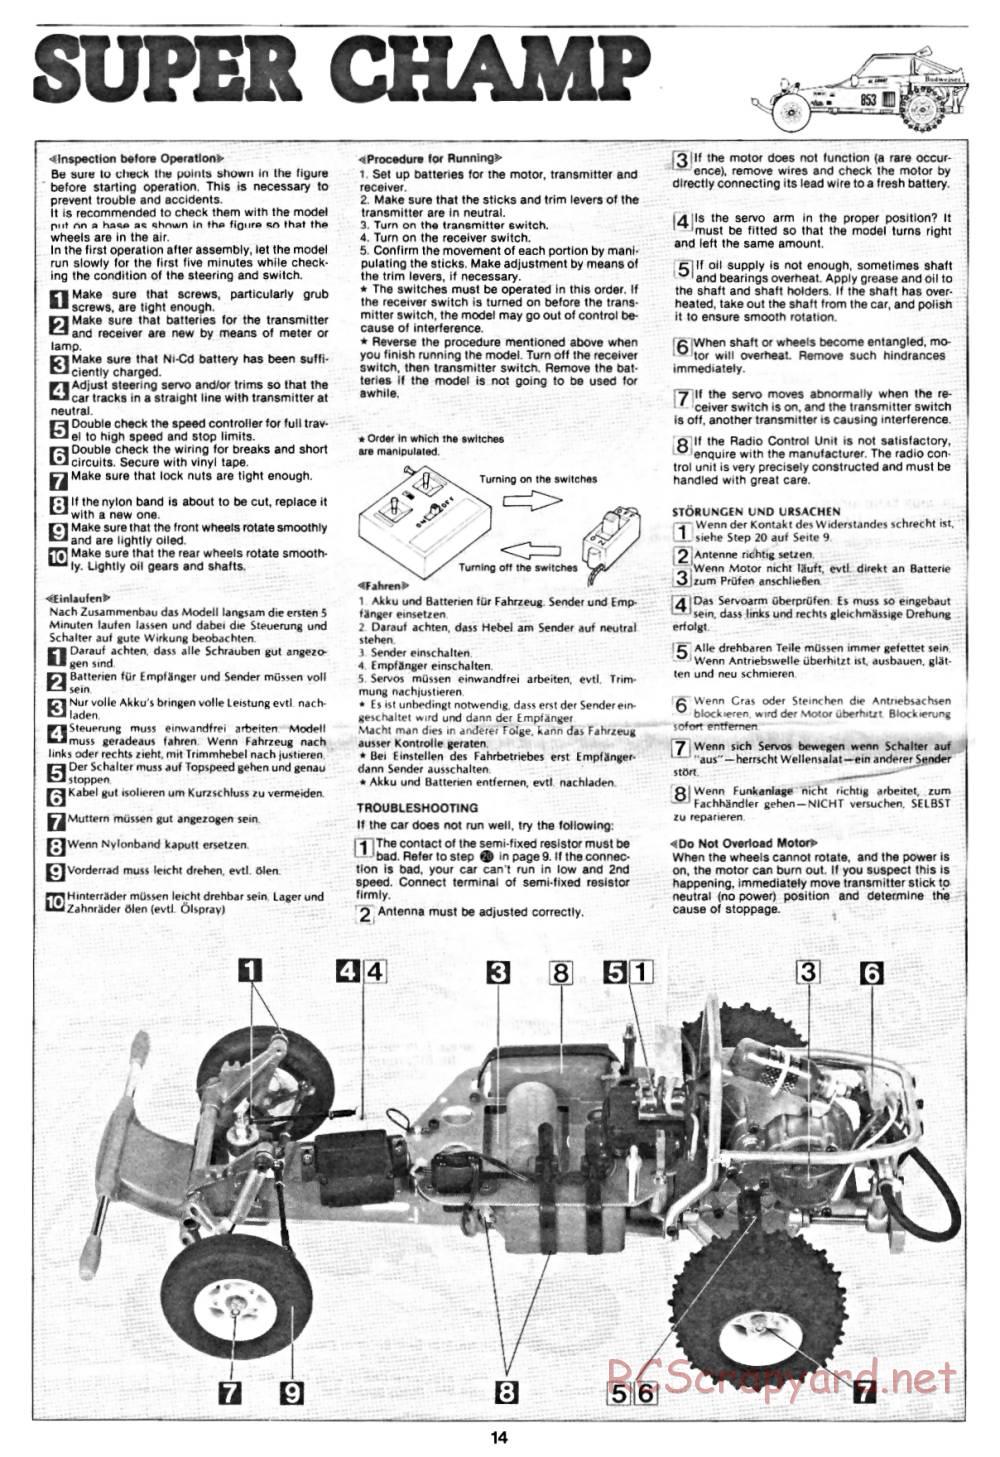 Tamiya - Super Champ - 58034 - Manual - Page 14